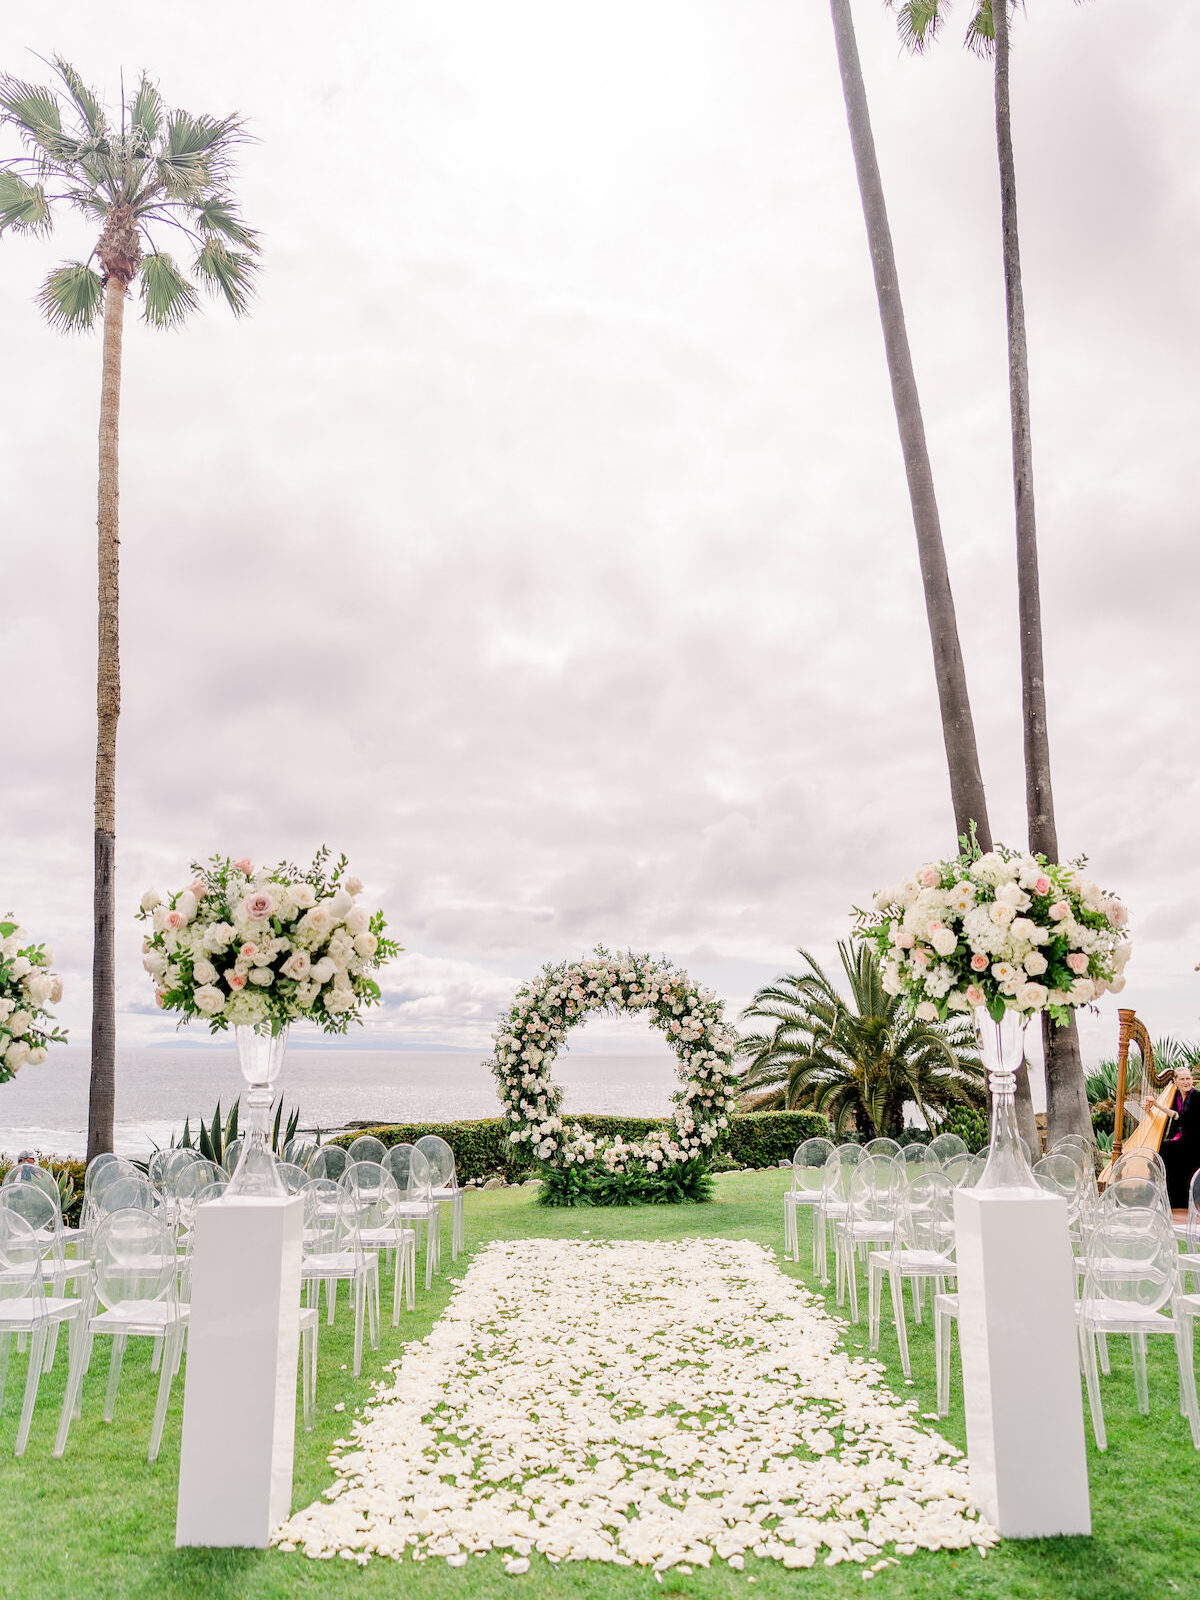 Outdoor wedding ceremony decor - De LA Planning